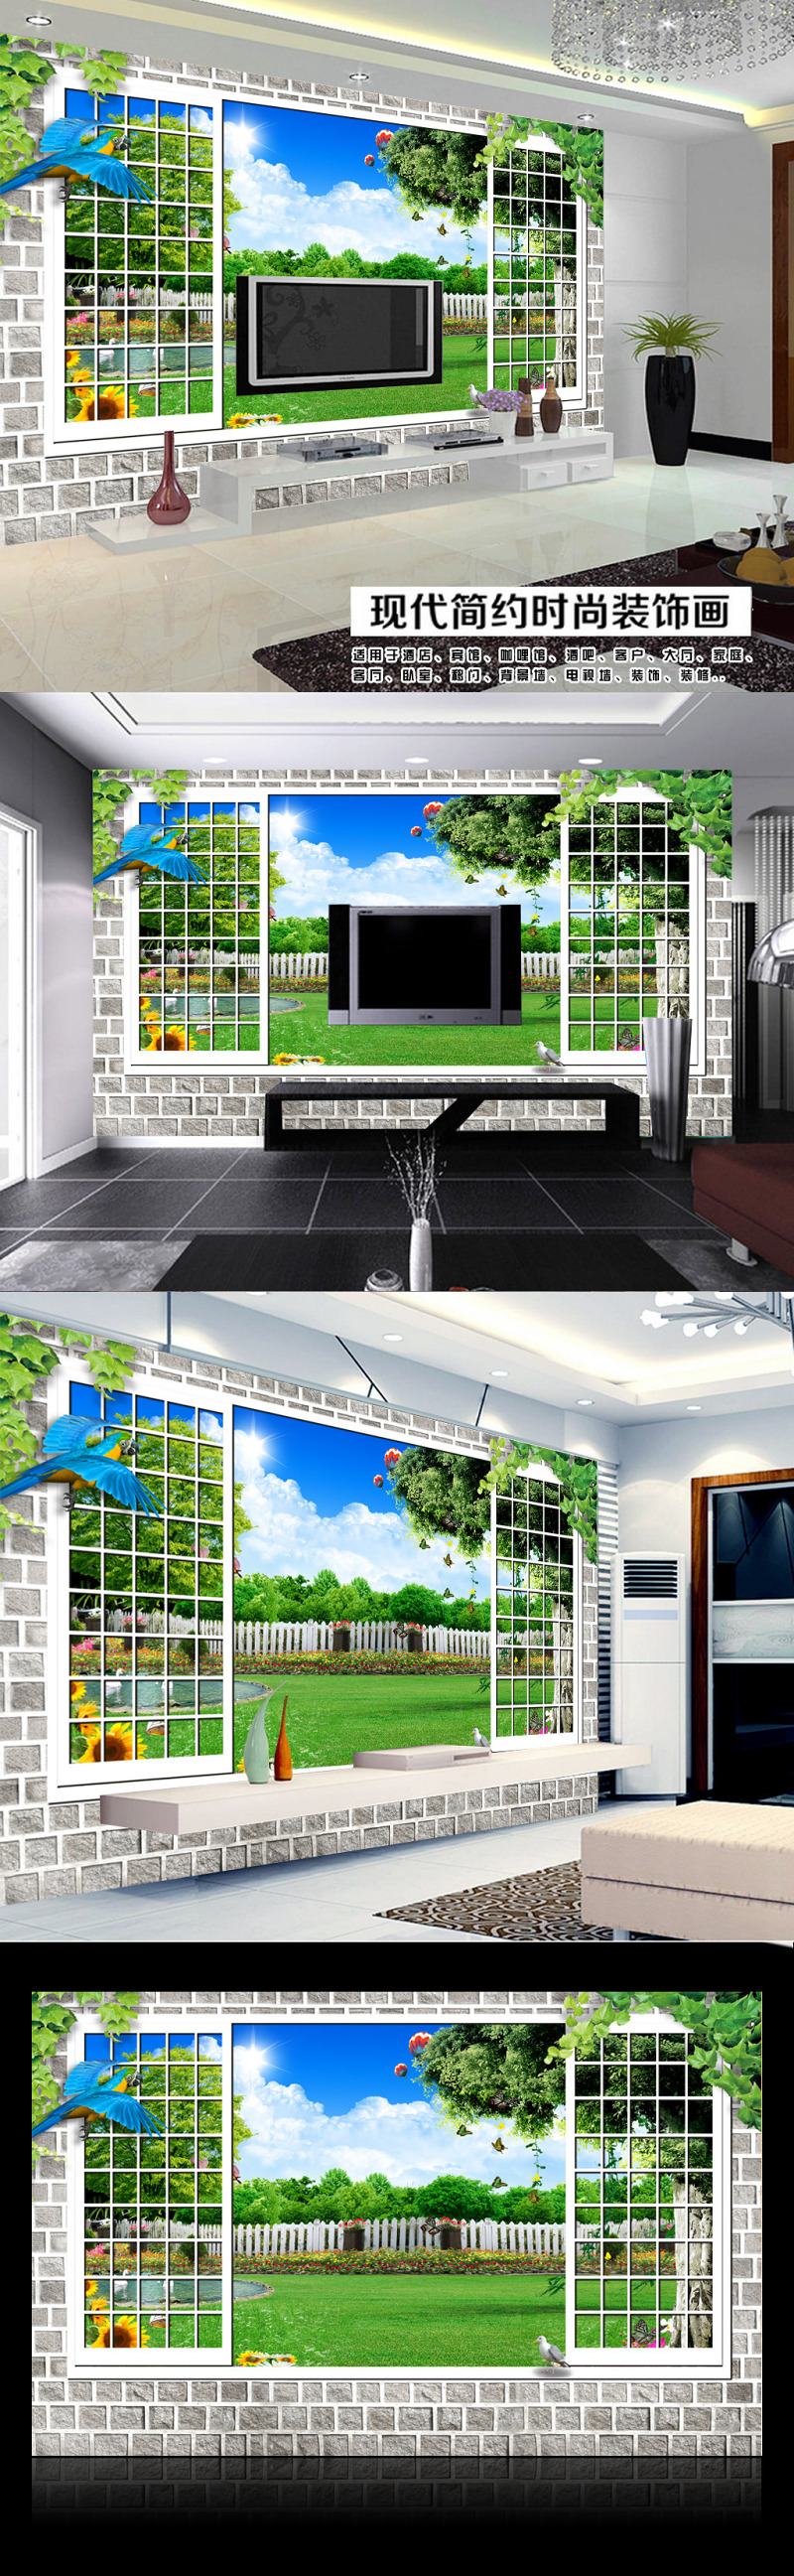 窗外园林风景高清3D立体电视背景墙